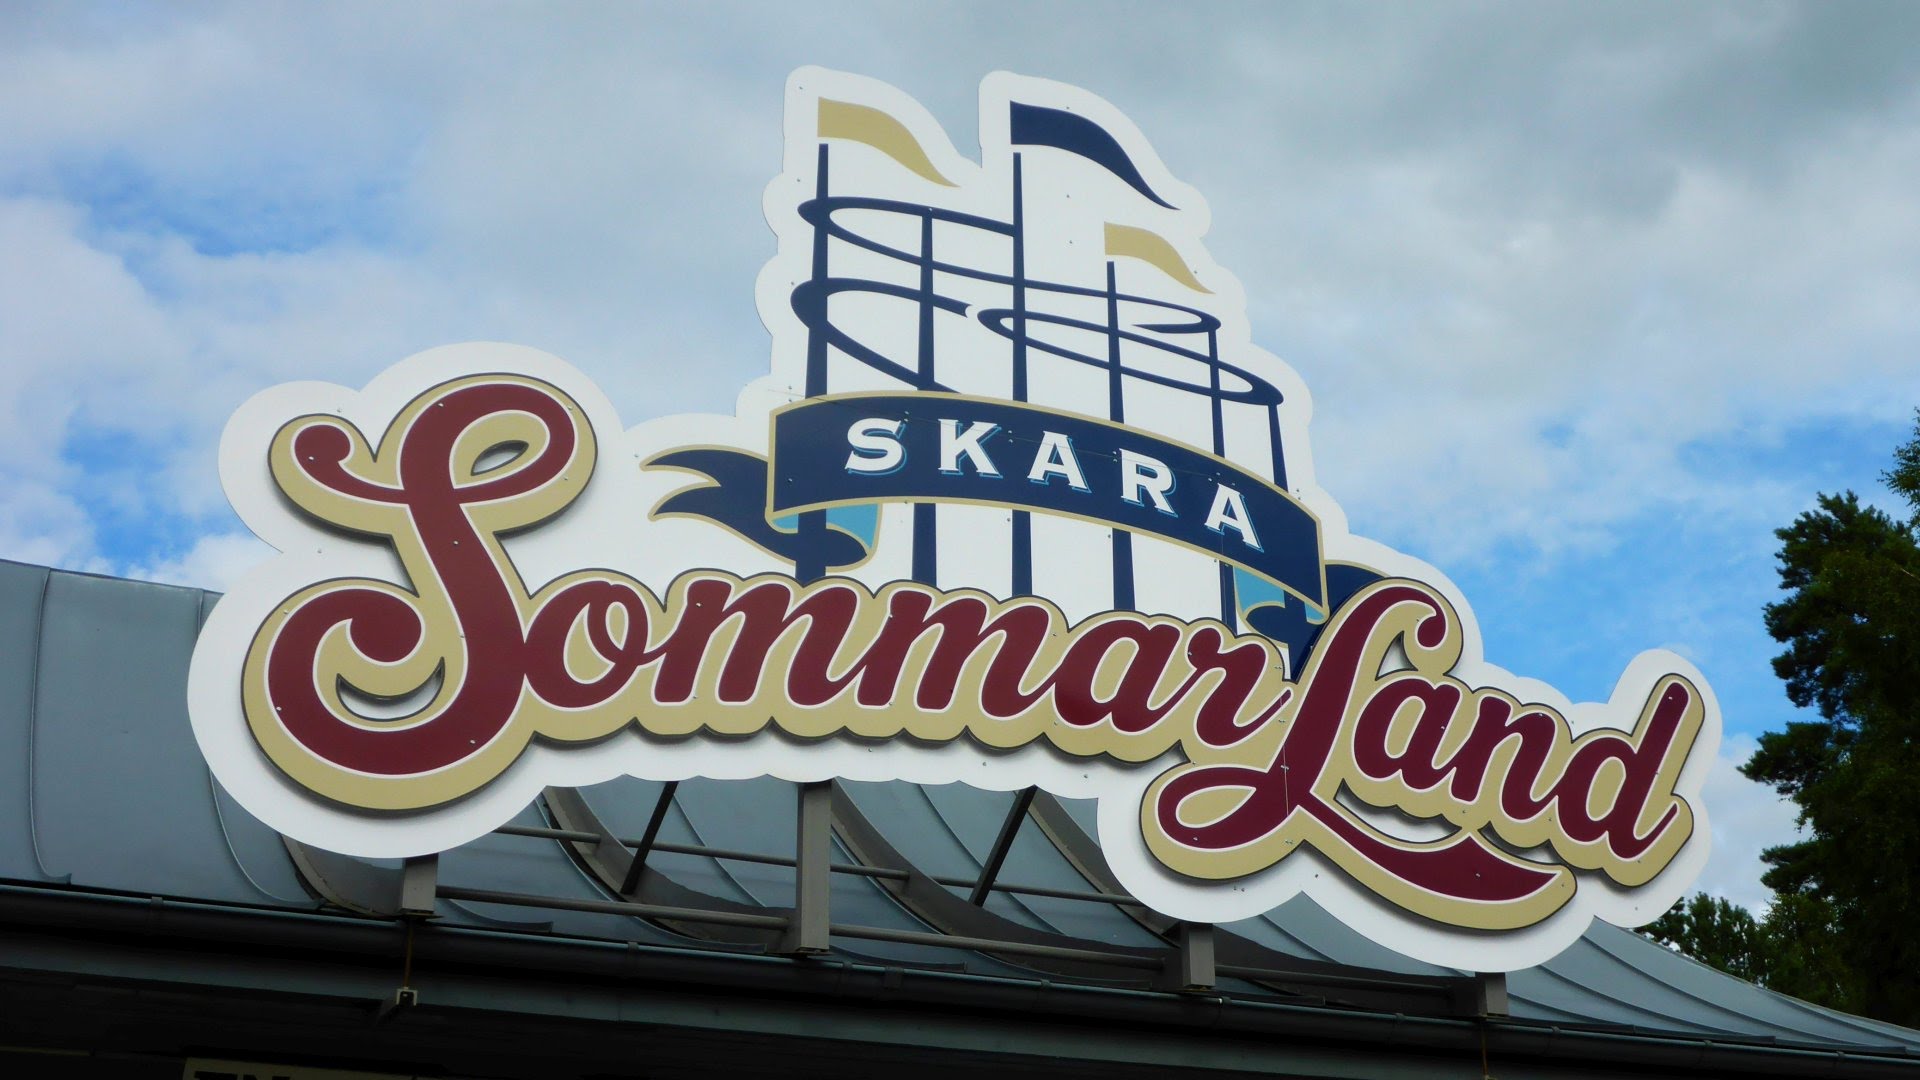 All Slides at Skara Sommarland :: Alle Rutschen! :: GoPro Edit POV